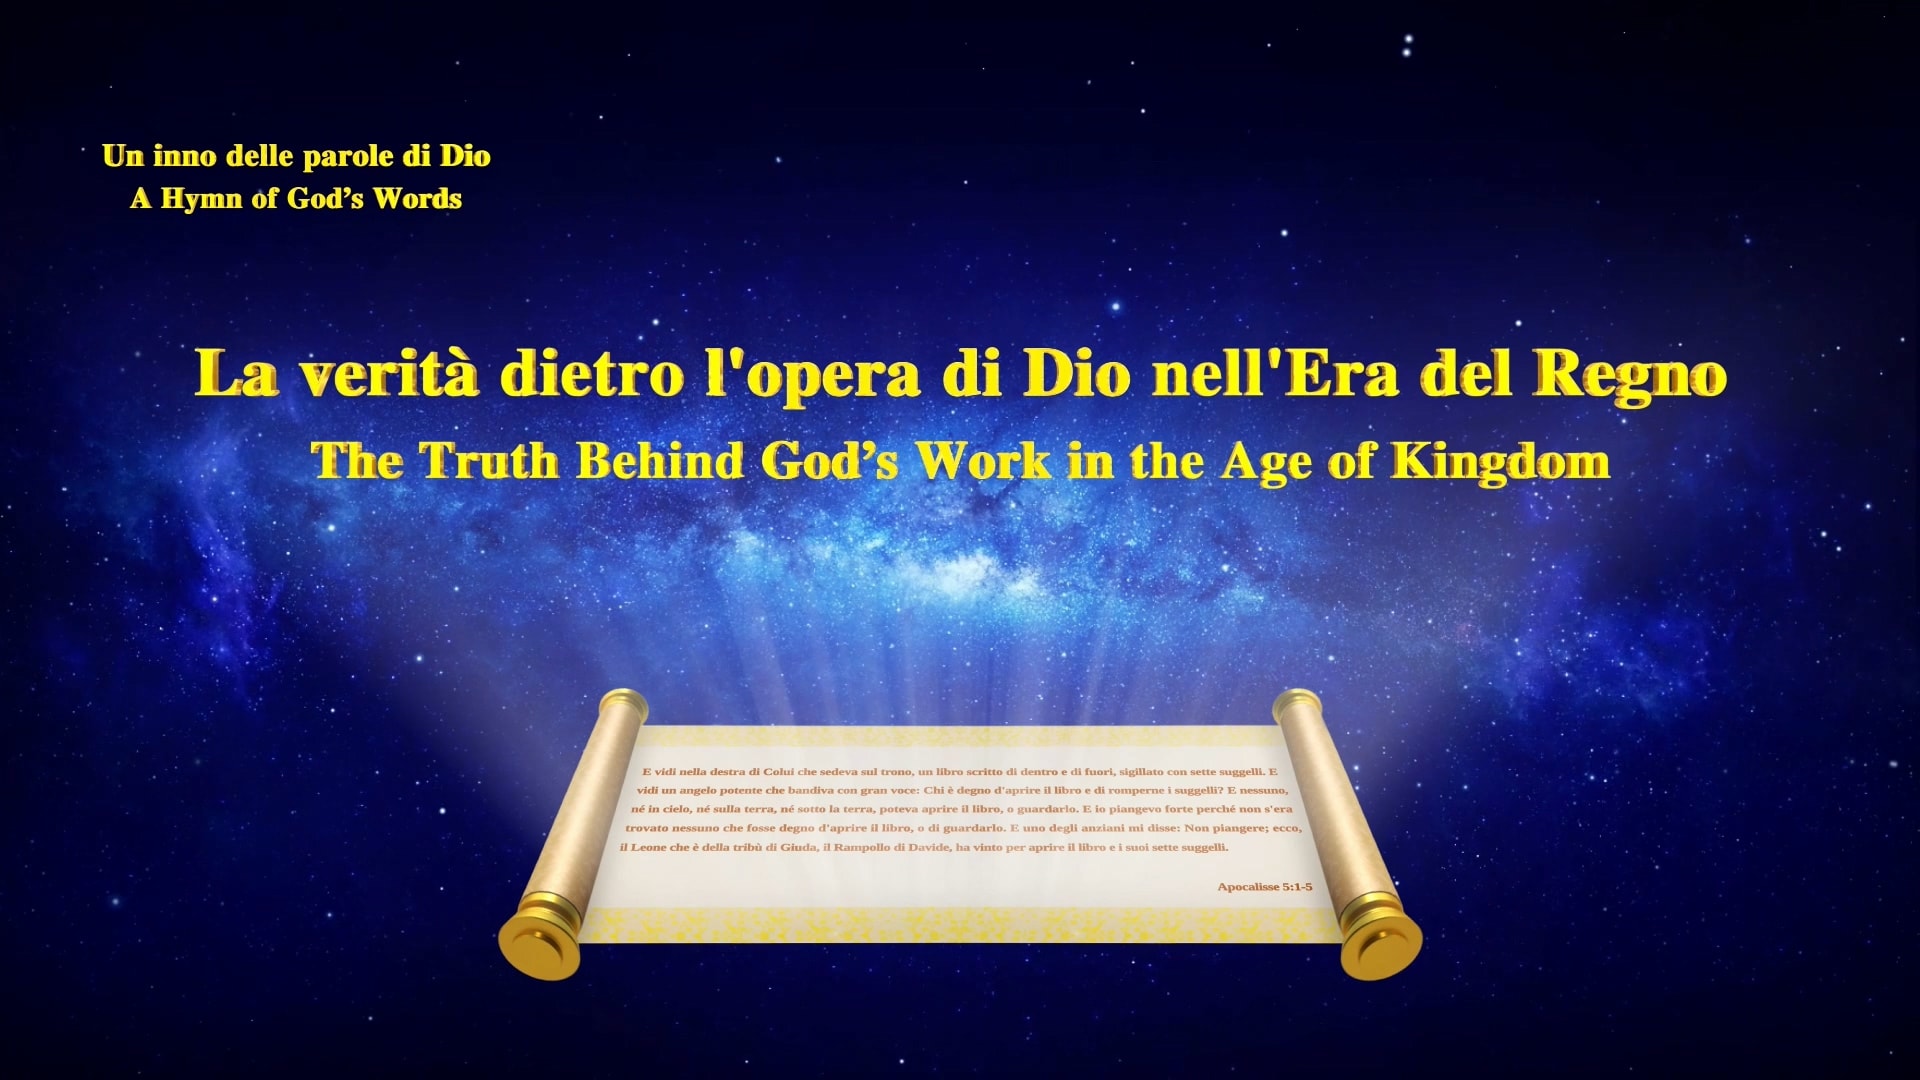 La verità dietro l'opera di Dio nell'Era del Regno | Lodare Dio Onnipotente